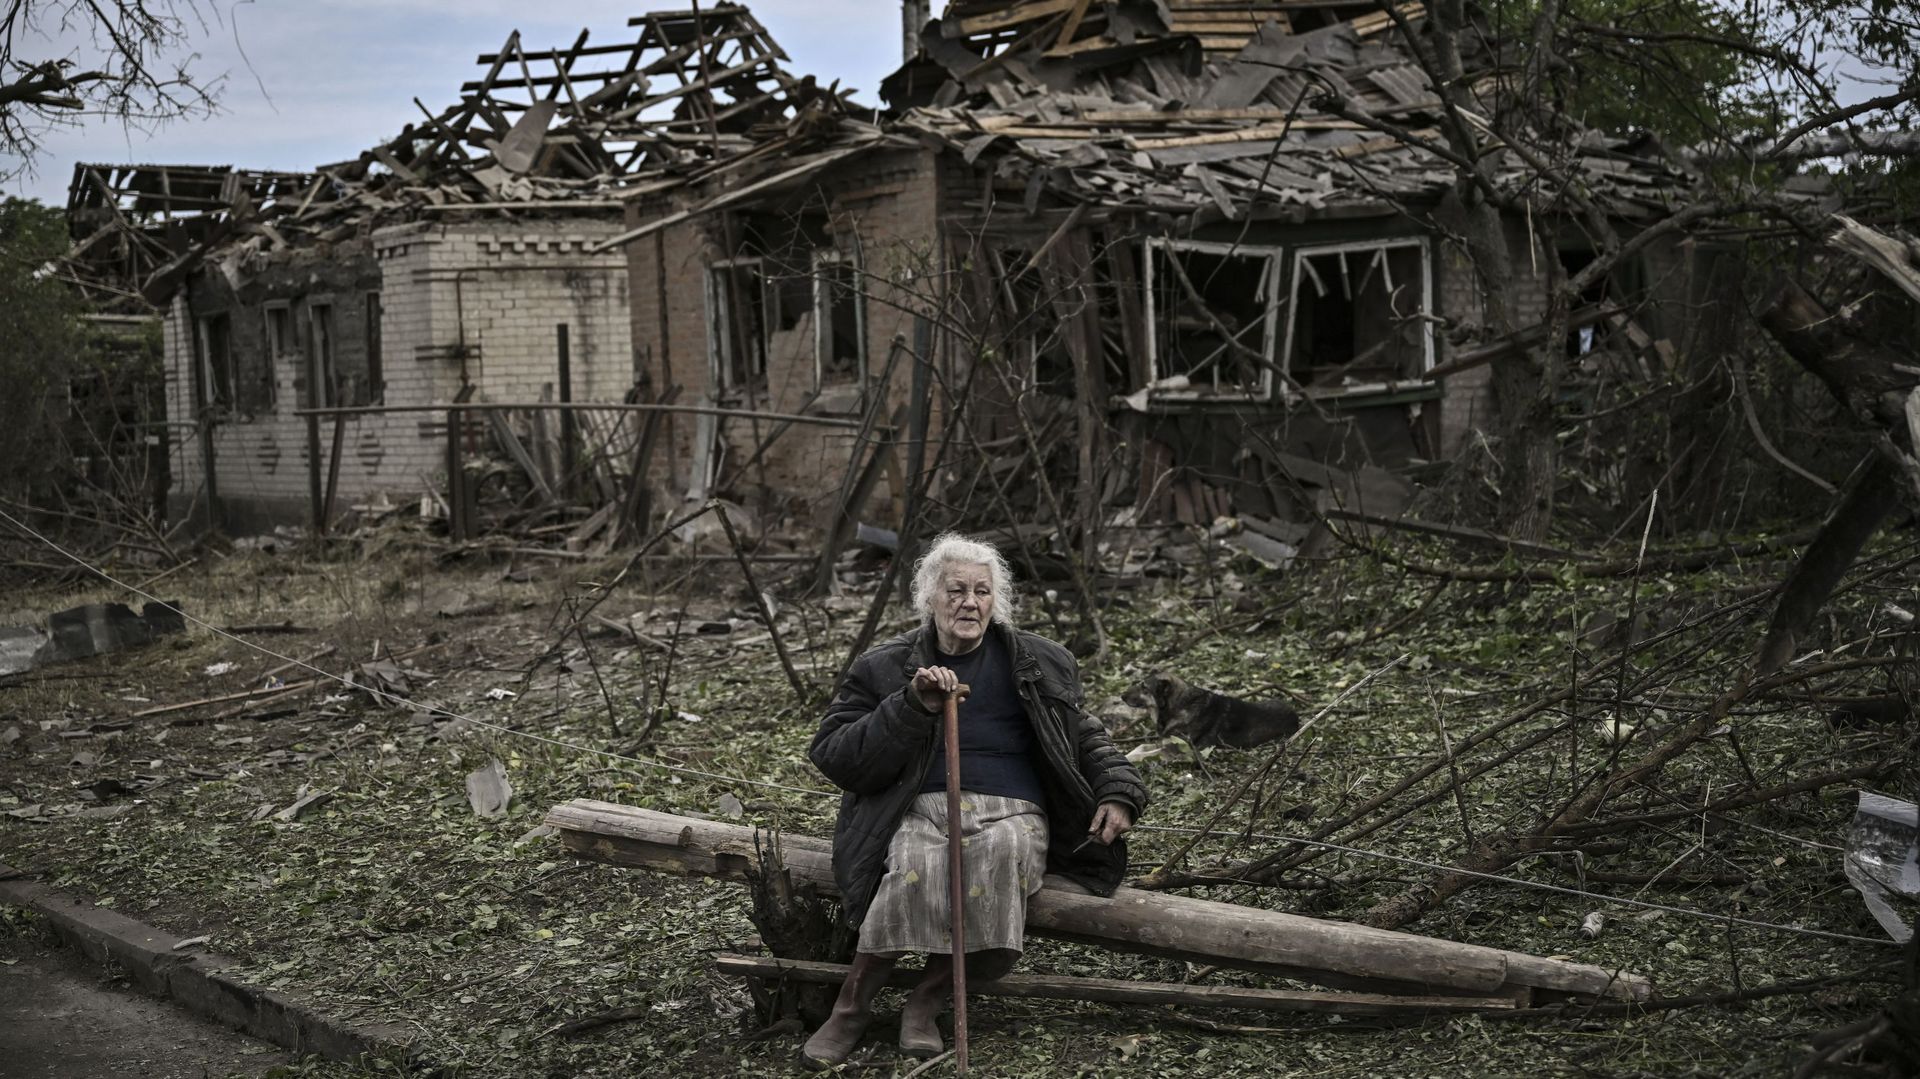 Une femme âgée est assise devant des maisons détruites après une frappe de missile, qui a tué une vieille femme, dans la ville de Druzhkivka (également écrite Druzhkovka) dans la région de Donbas, dans l'est de l'Ukraine, le 5 juin 2022.  